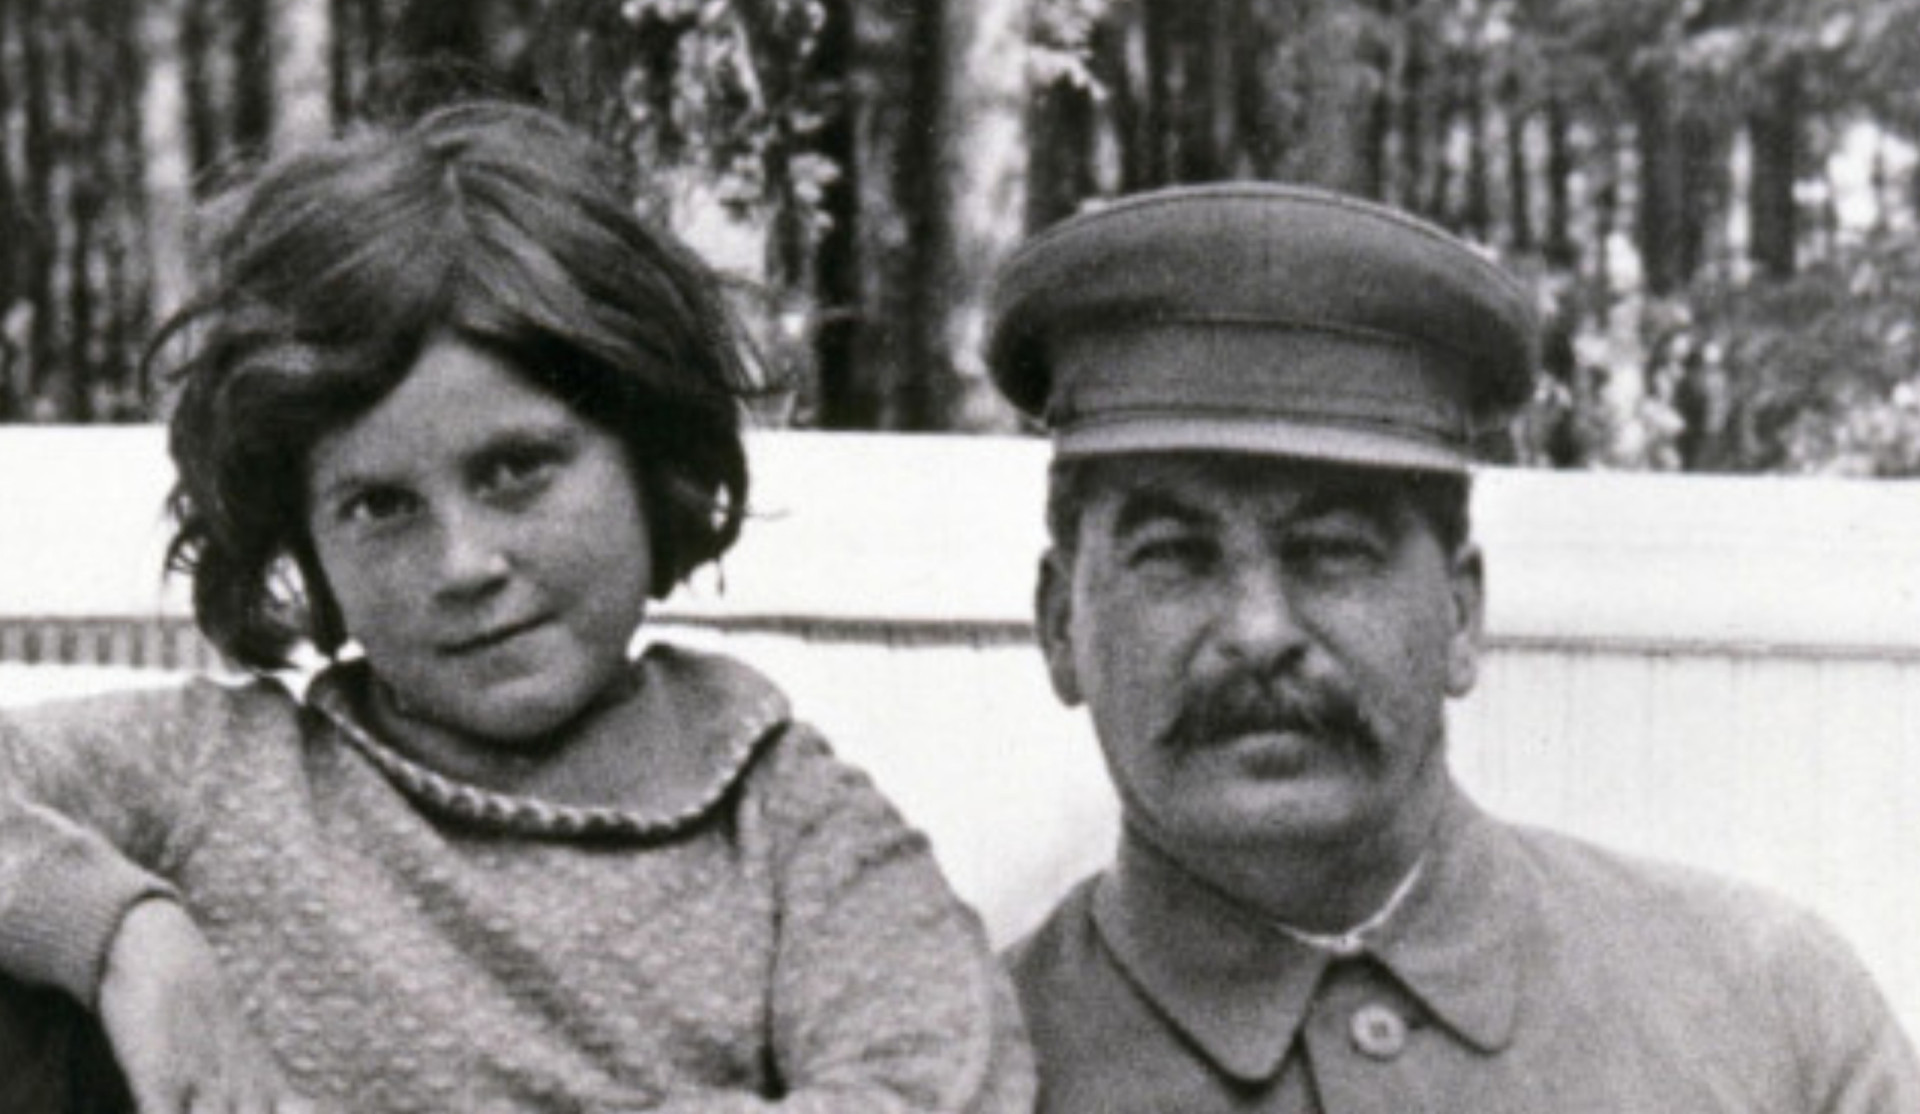 <p>Es ist wohl keine Überraschung, dass eine Geburt unter einem so großen und furchterregenden Schatten wie dem von Josef Stalin unweigerlich mit Komplikationen verbunden ist. Swetlana Allilujewa, das jüngste Kind und die einzige Tochter des zweiten Führers der Sowjetunion, befand sich in einer Lage, die selbst für die übrigen Stalinkinder einmalig war. Angesichts einer <a href="https://de.starsinsider.com/promis/232560/diese-kinderstars-mussten-viel-zu-frueh-erwachsen-werden" rel="noopener">Kindheit voller Tragödien</a> und Vernachlässigung schrieb Swetlana im Jahr 1967 Geschichte, als sie sich allen Wünschen ihres Vaters und allen Traditionen der Sowjetunion widersetzte und in die Vereinigten Staaten überlief. Ihr Lebensweg unterscheidet sich von dem aller anderen Menschen, die vor oder nach ihr kamen.</p> <p>Lesen Sie weiter und erfahren Sie alles, was Sie über Stalins einzige Tochter und ihren Weg in die Freiheit wissen müssen.</p><p>Sie können auch mögen:<a href="https://de.starsinsider.com/n/116640?utm_source=msn.com&utm_medium=display&utm_campaign=referral_description&utm_content=537755"> Mode und Krieg? Diese alltäglichen Kleidungsstücke wurden ursprünglich für den Kampf entworfen</a></p>